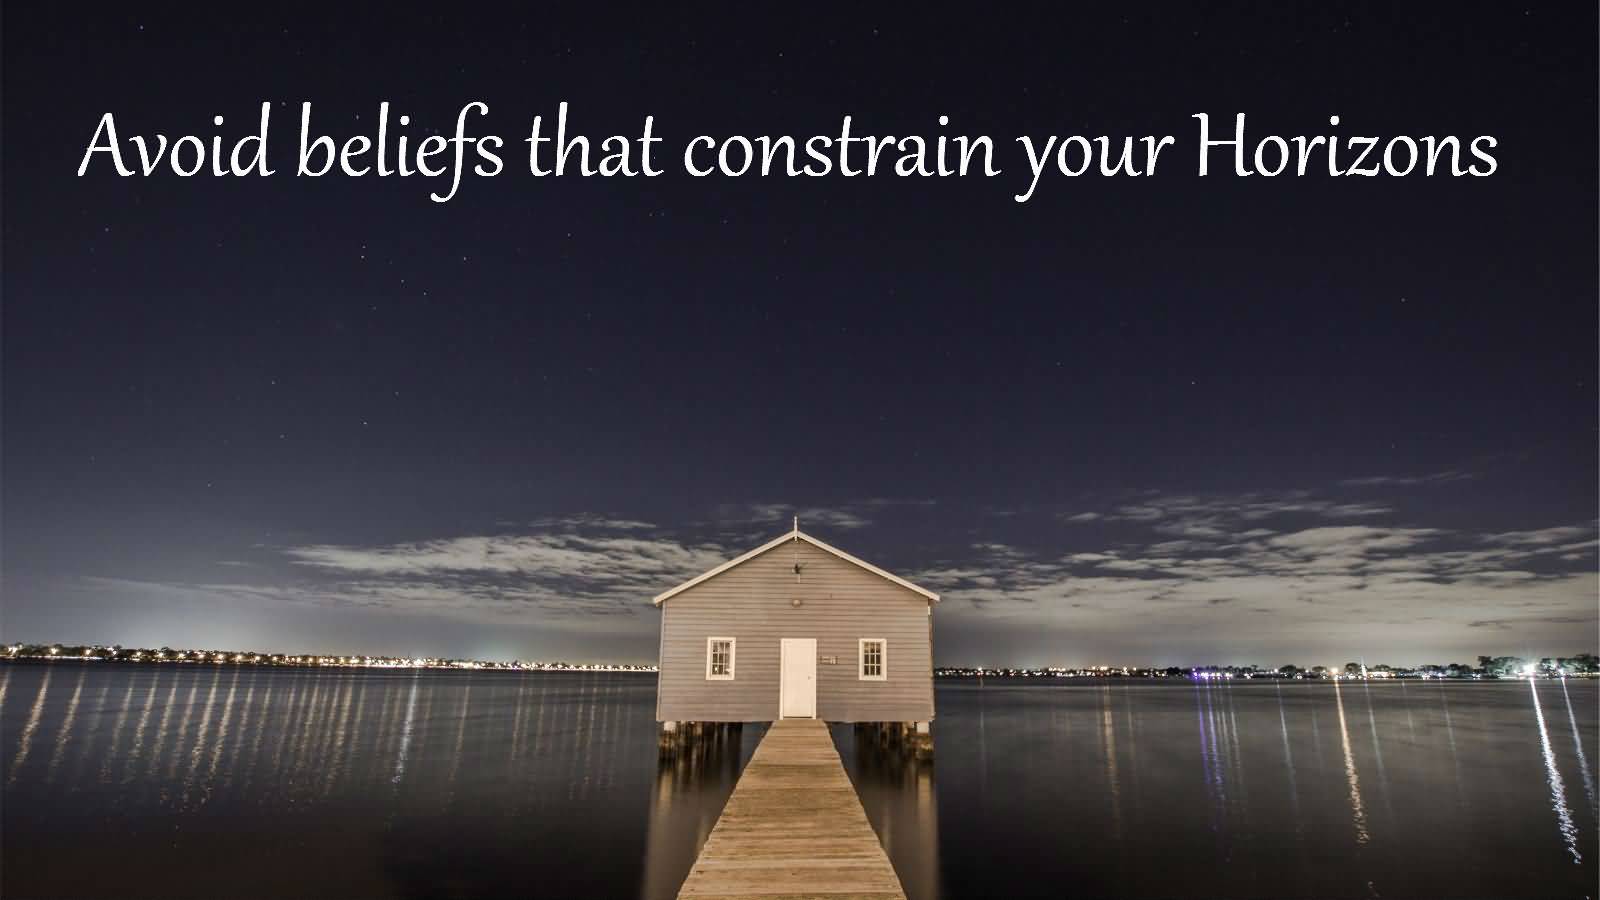 Avoid beliefs that constrain your Horizon